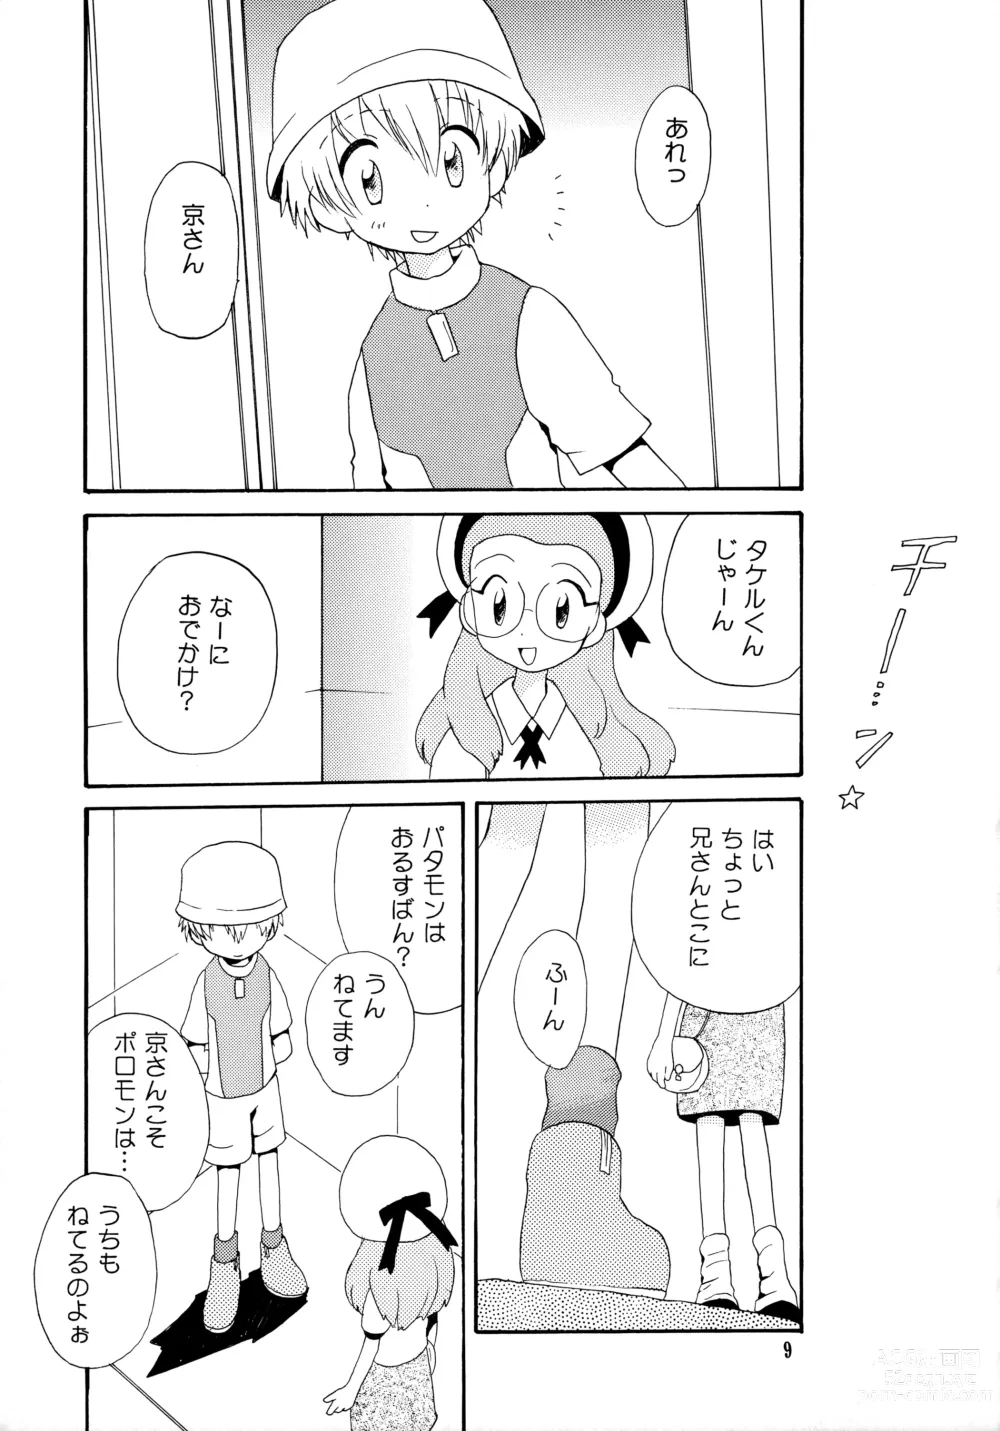 Page 8 of doujinshi Yorokobi mo Kanashimi mo Ikutoshitsuki